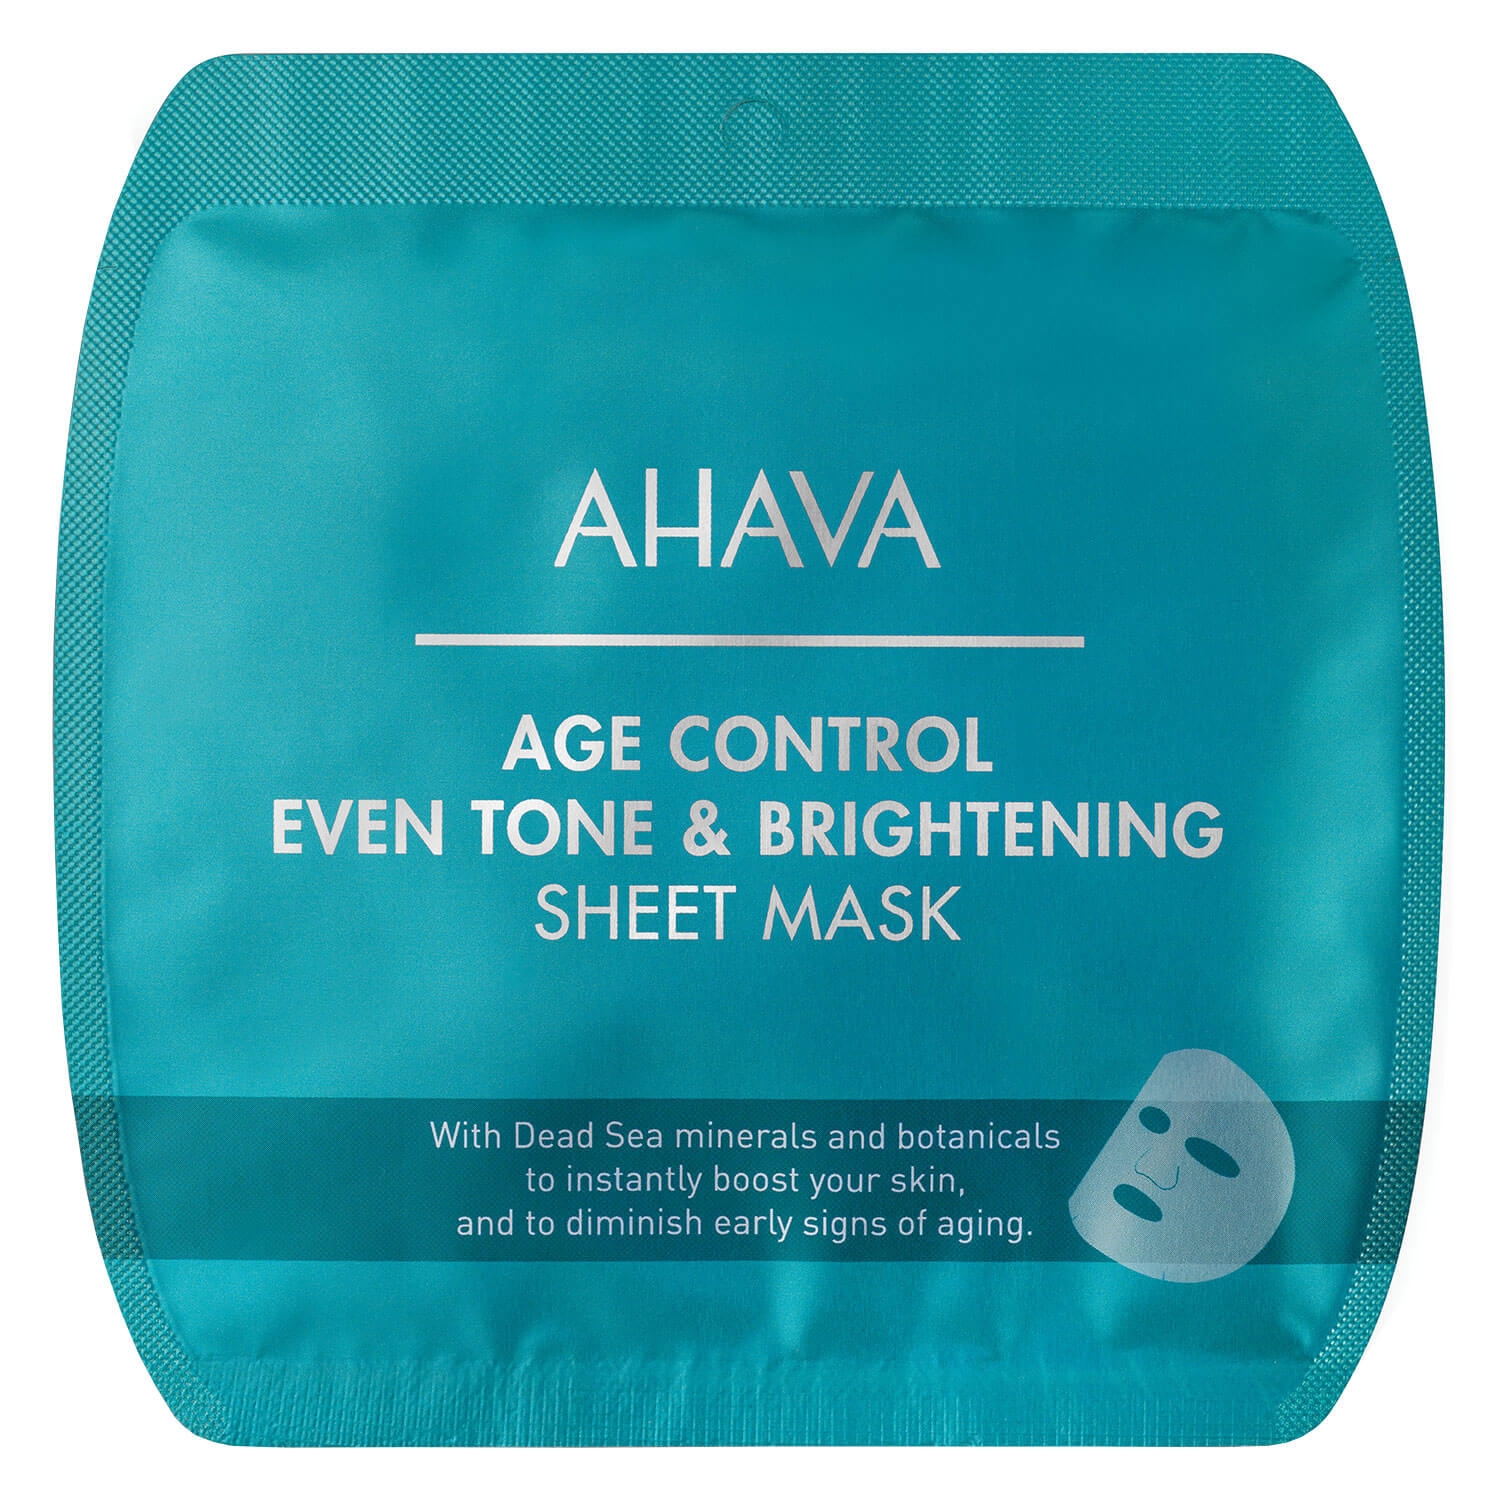 Produktbild von DeadSea Minerals - Age Control Even Tone & Brightening Sheet Mask